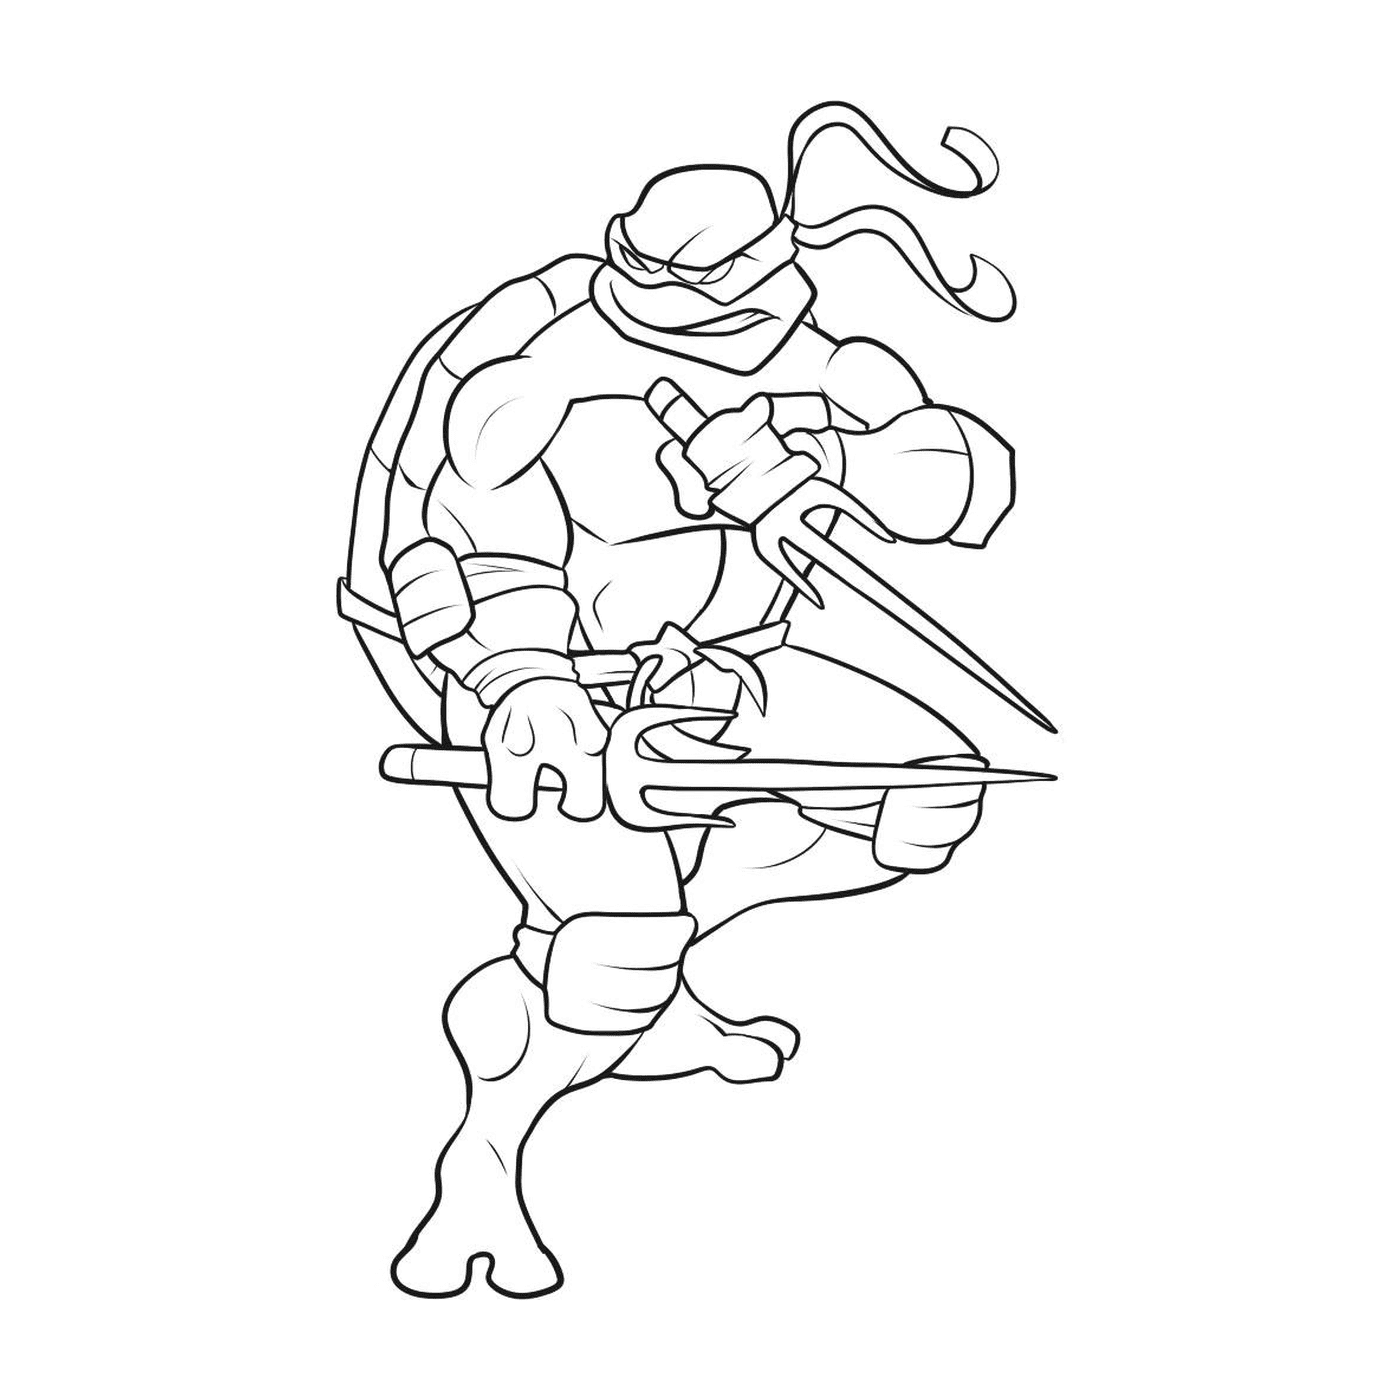  Ninja Schildkröte mit Bogen 